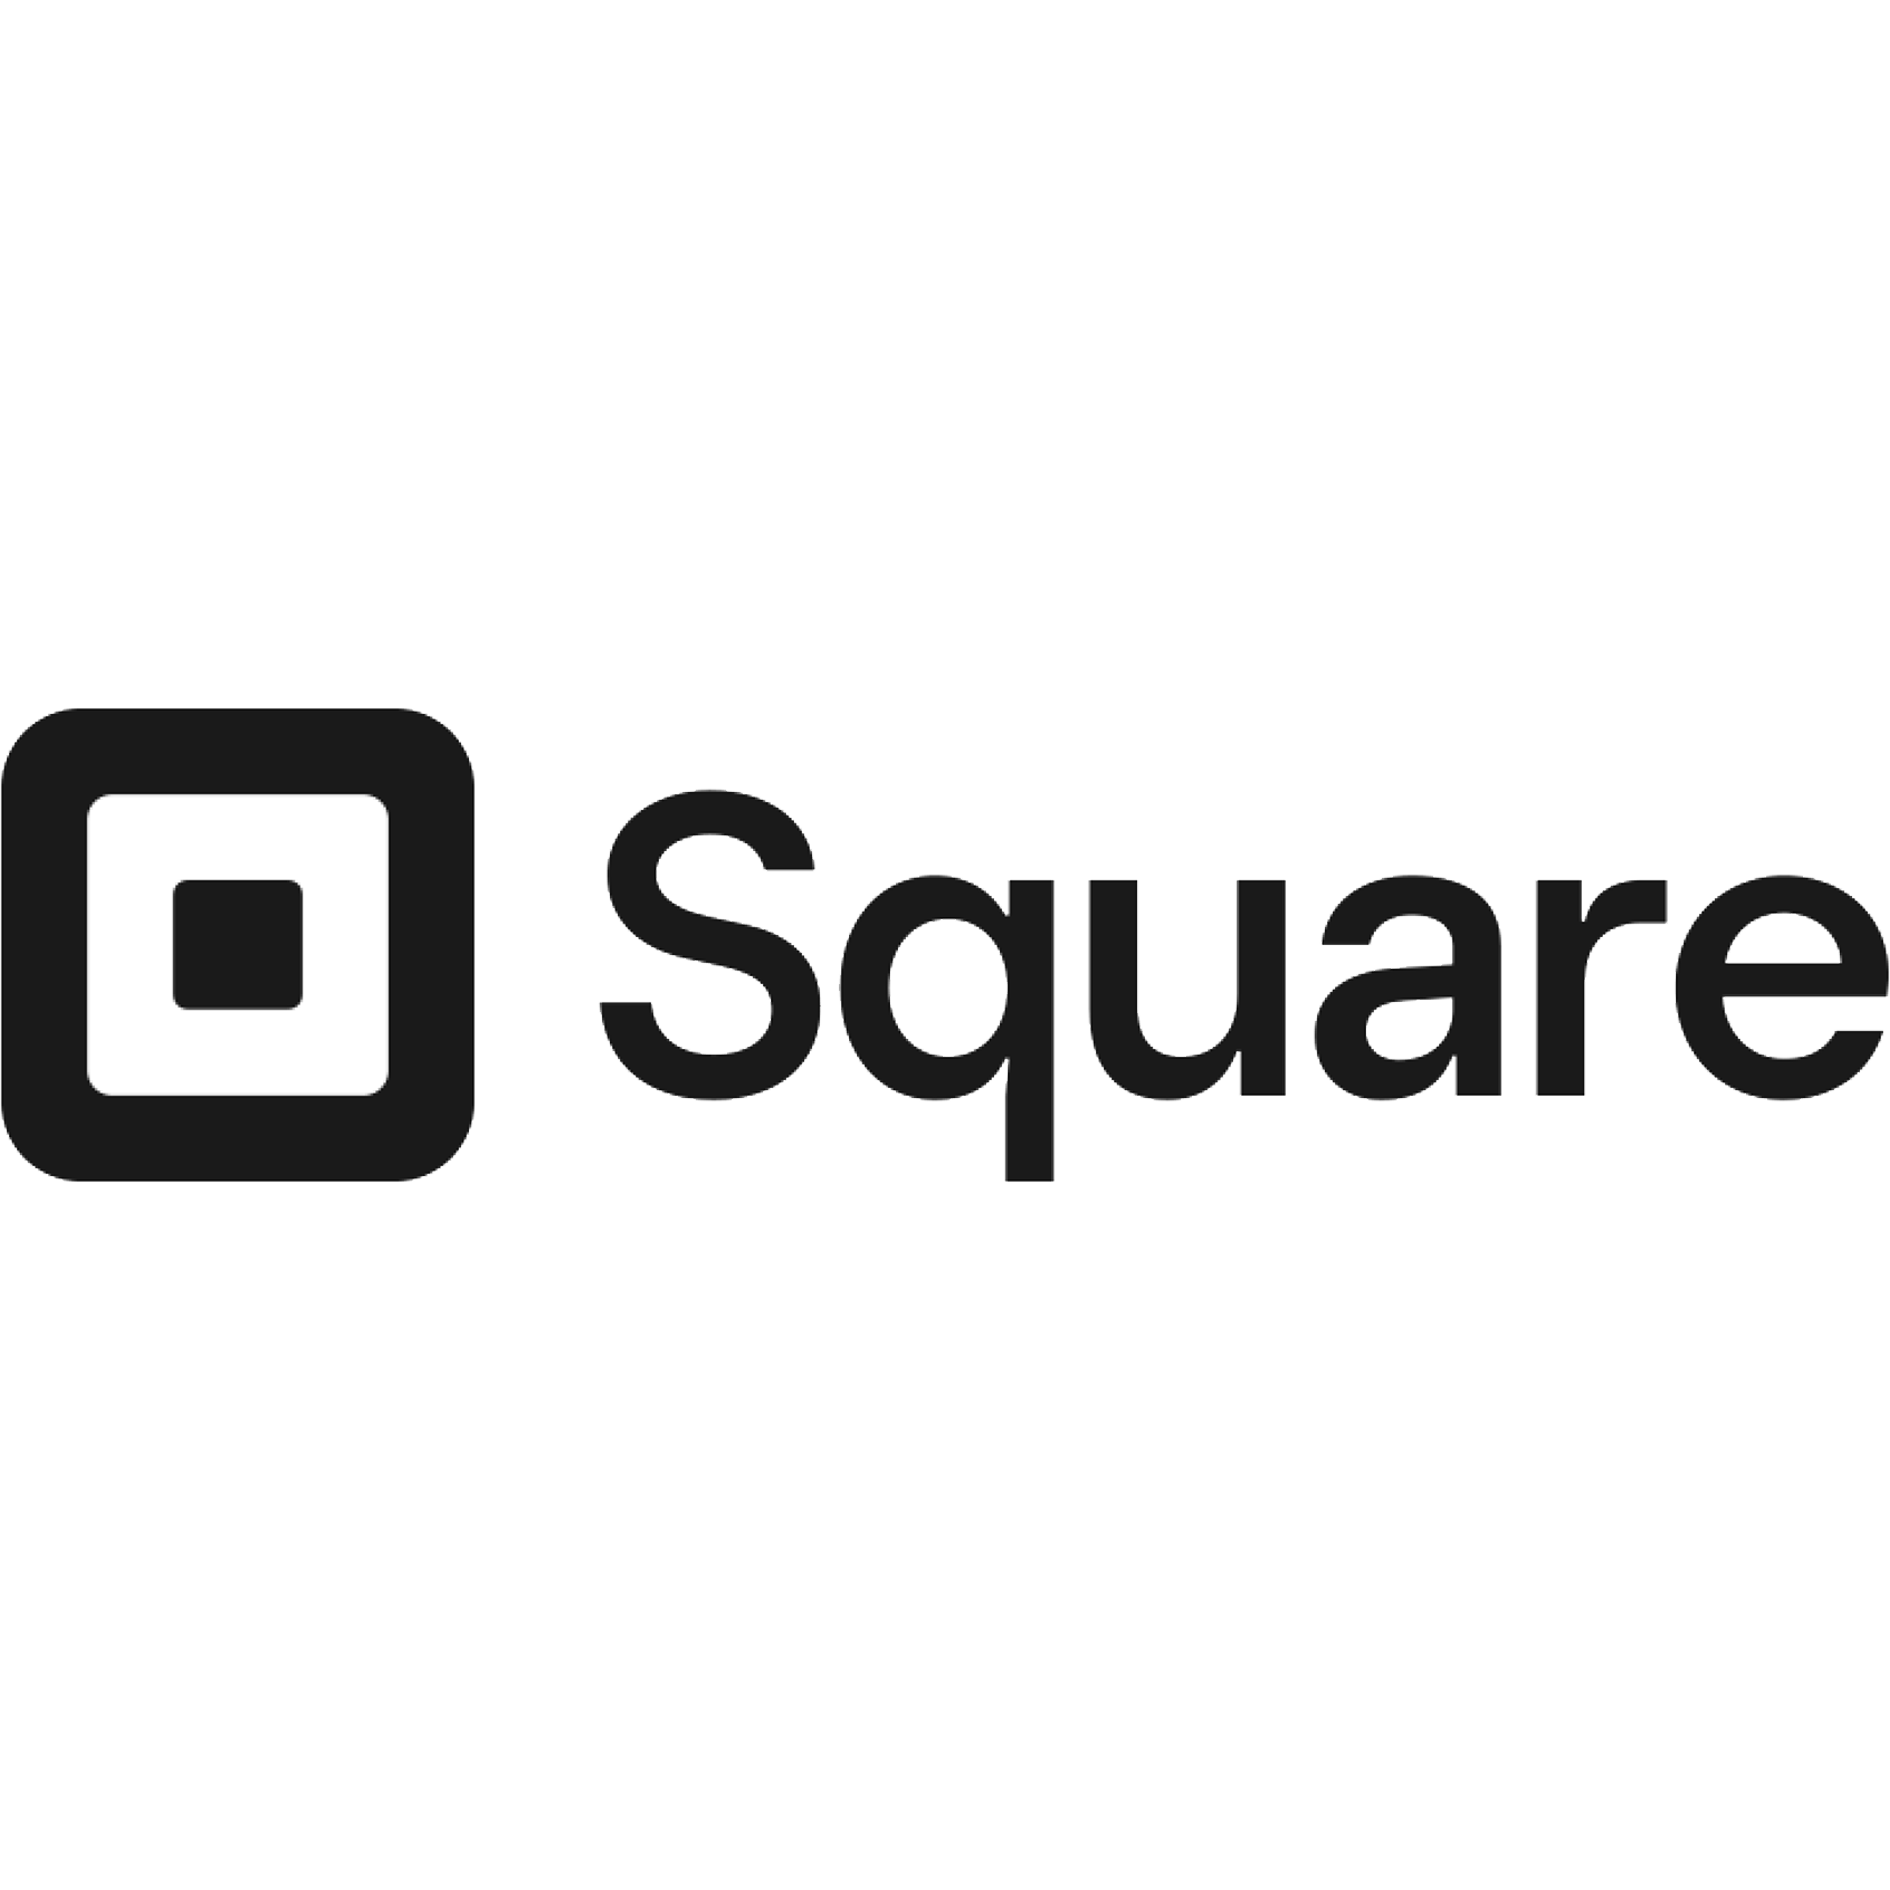 squareSquarespaceLogos.png